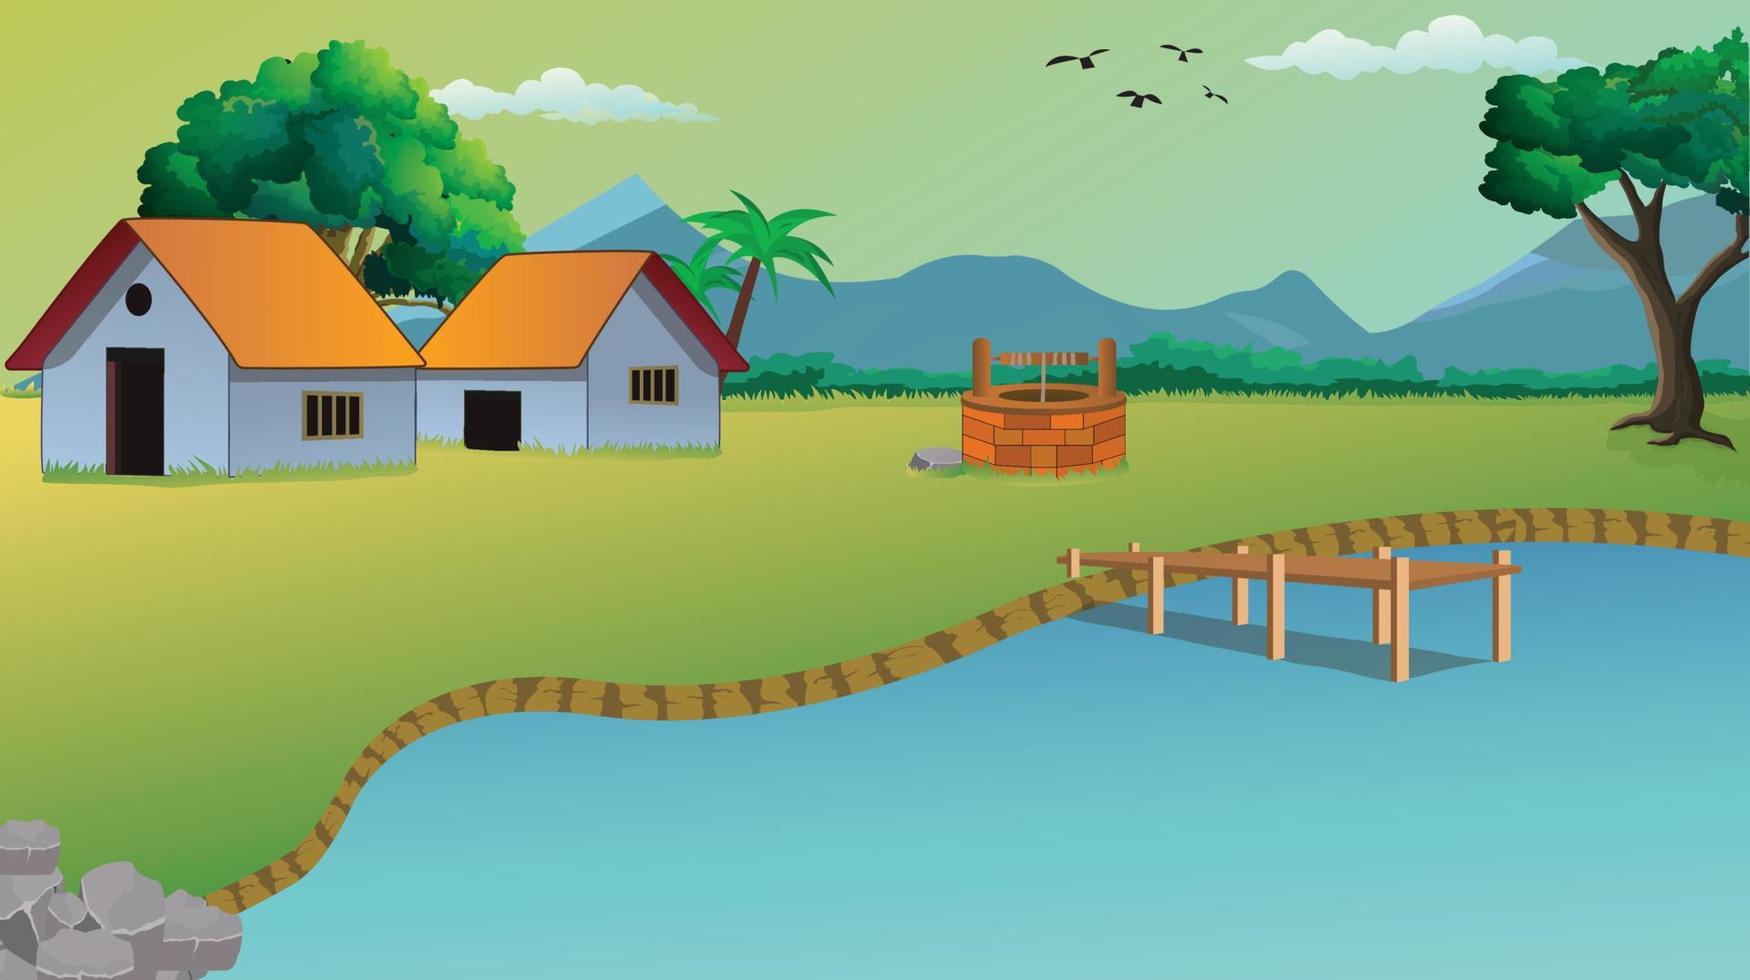 illustration de fond de dessin animé de village avec chalet de style ancien, lac, puits, arbres, route étroite, montagnes et herbe verte. vecteur